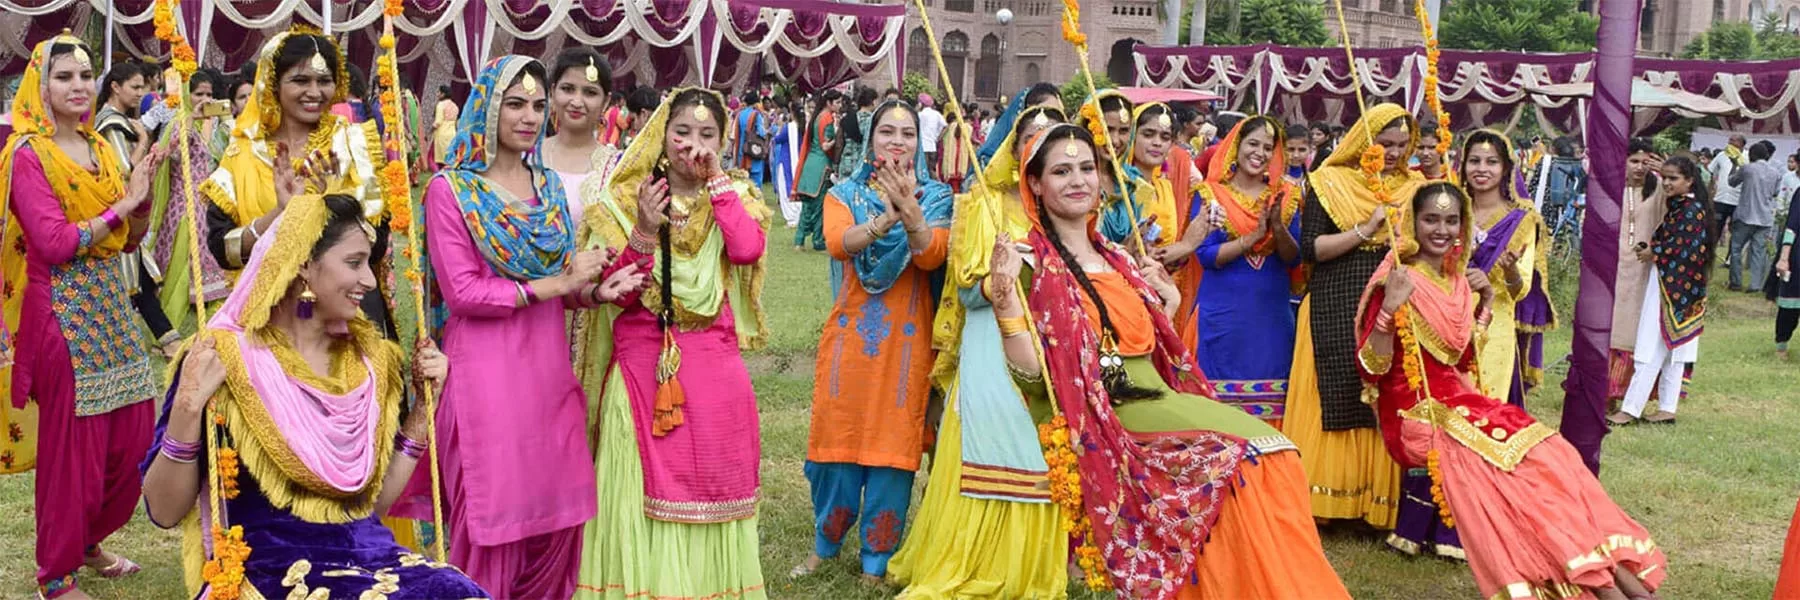 Teej festival in India